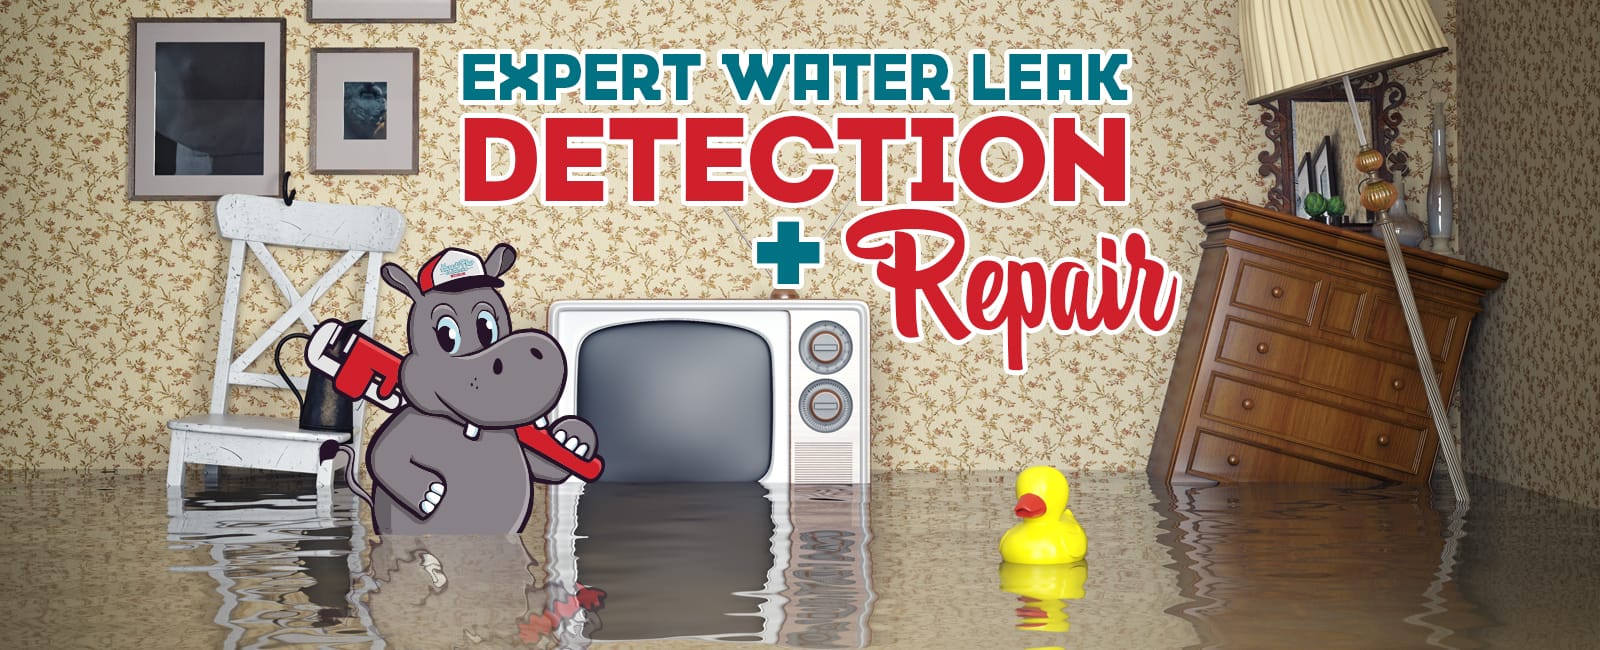 Expert Leak Detection and Repair